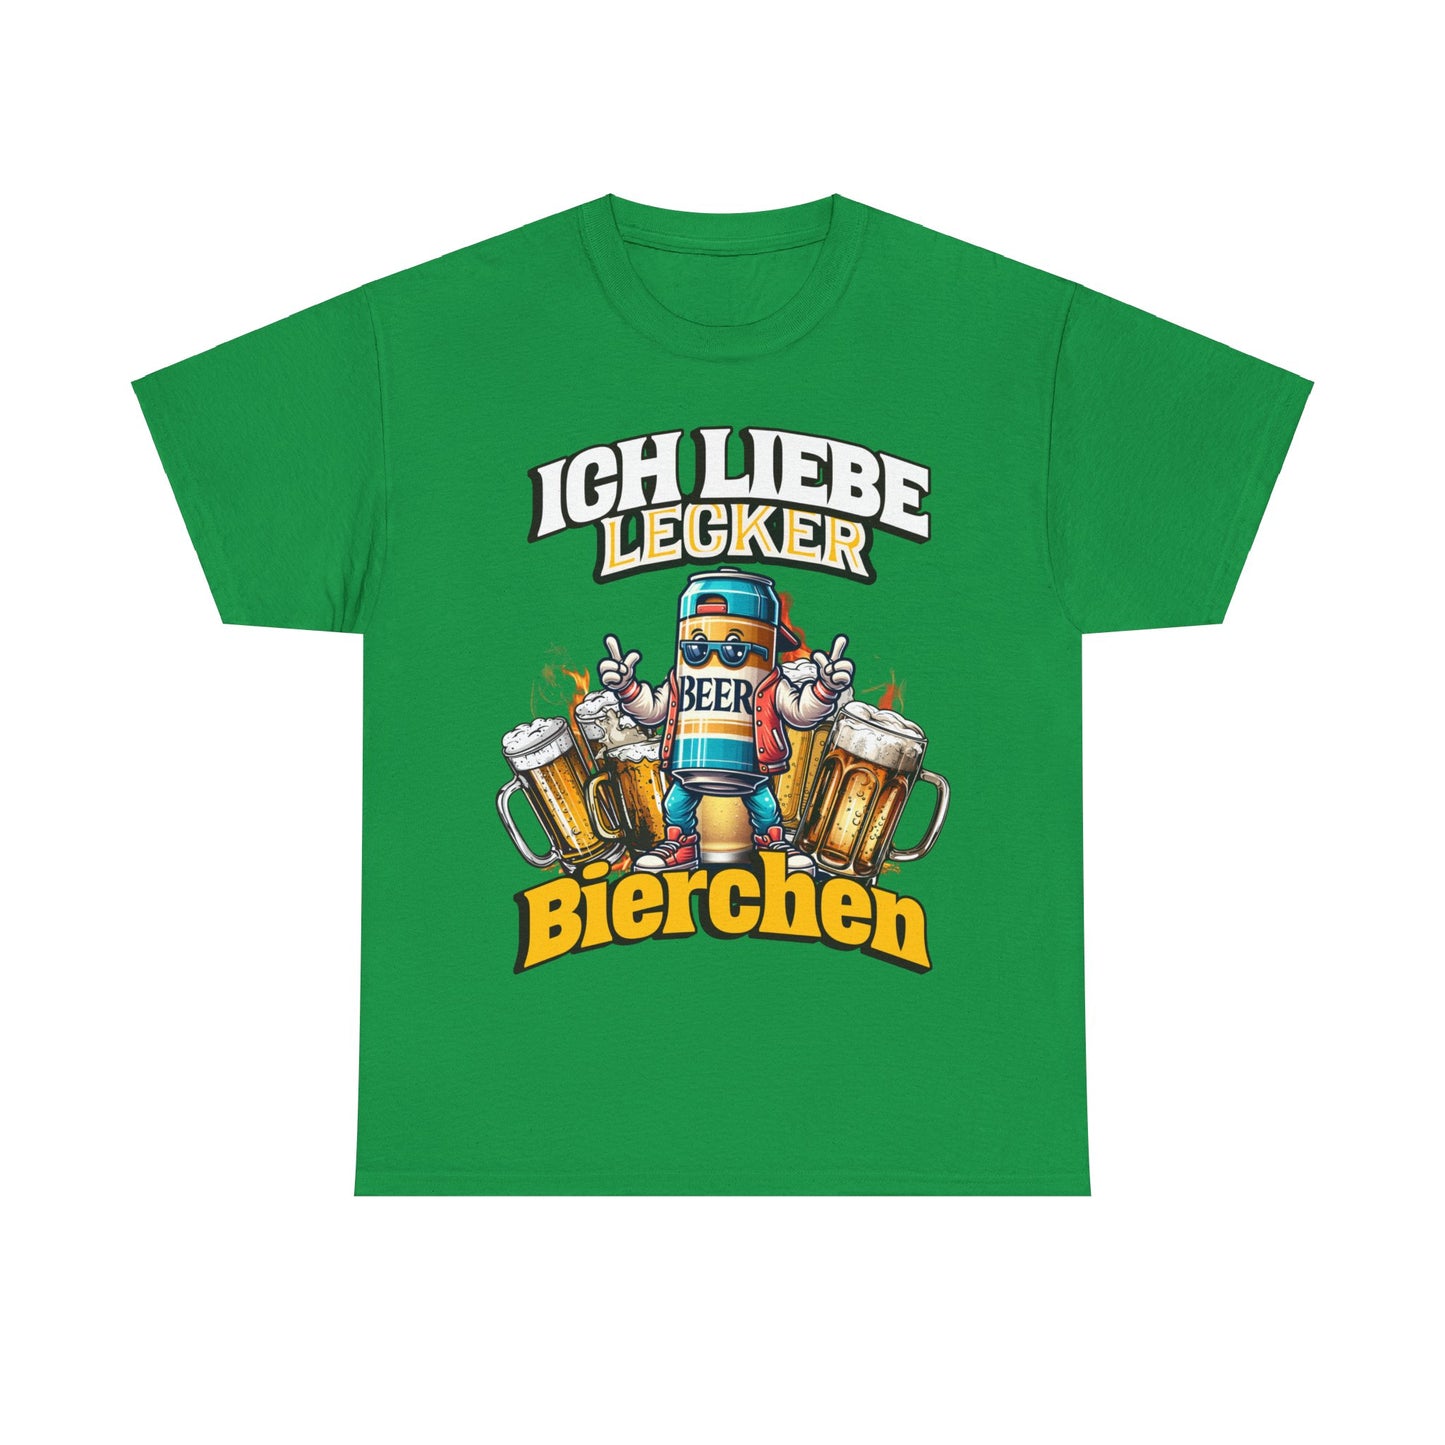 Unser "Ich liebe lecker Bierchen" T-Shirt ist das ultimative Party-Essential! Perfekt für Ballermann-Fans und alle, die gerne feiern. Mit diesem Shirt bist du der Star auf jeder Party und zeigst deine Liebe zum Bier. Ideal für Junggesellenabschiede, Festivals und gemütliche Bierabende. Prost! Ballermann, Bierfans,Party